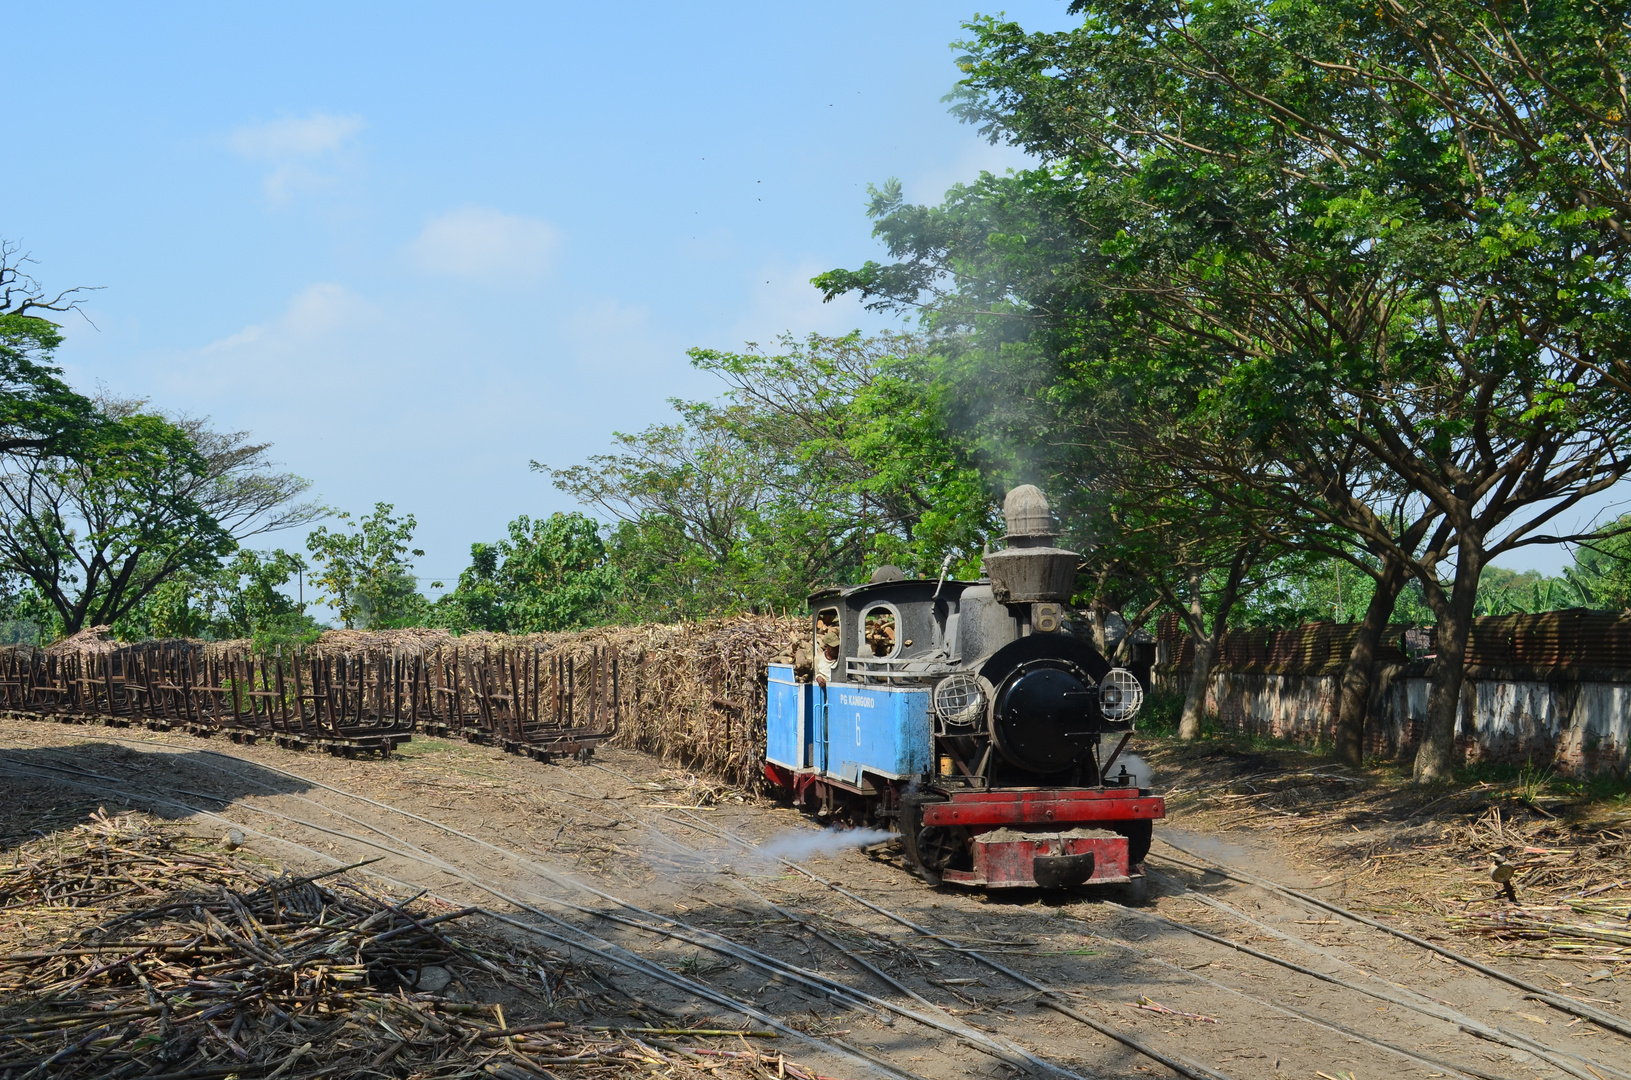 Zum "blue monday"Zuckerfabrik Kanigoro Indonesien II 516 Juli 2014